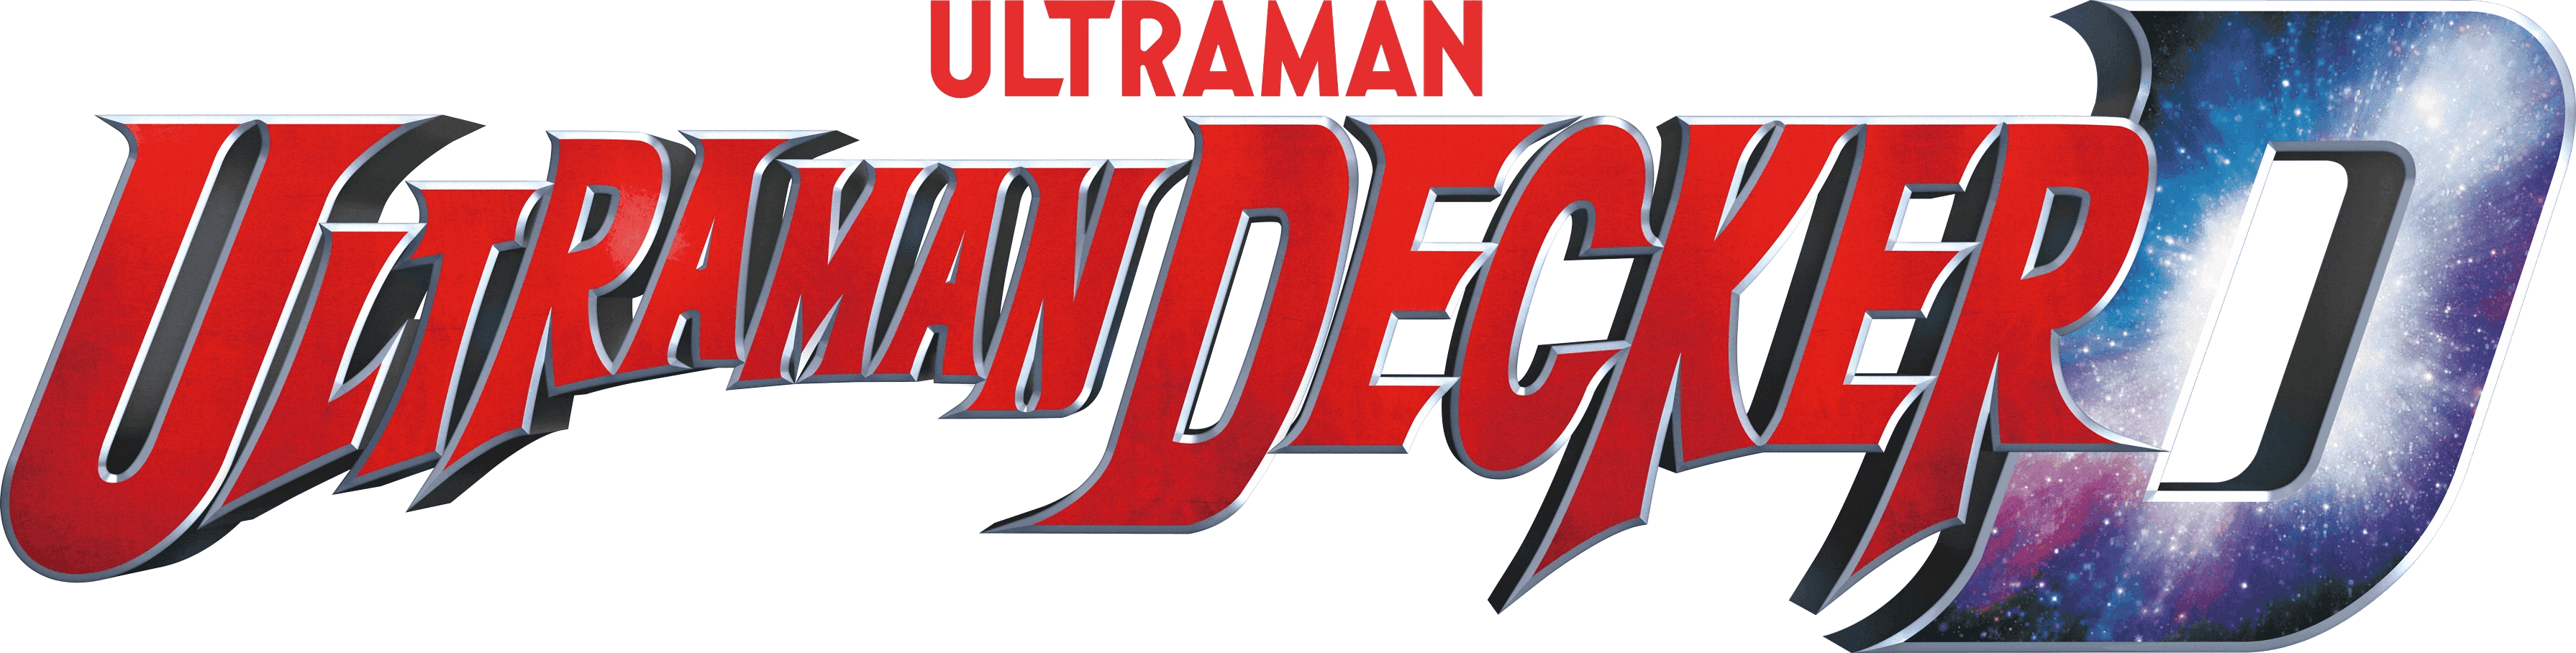 Ultraman Decker logo